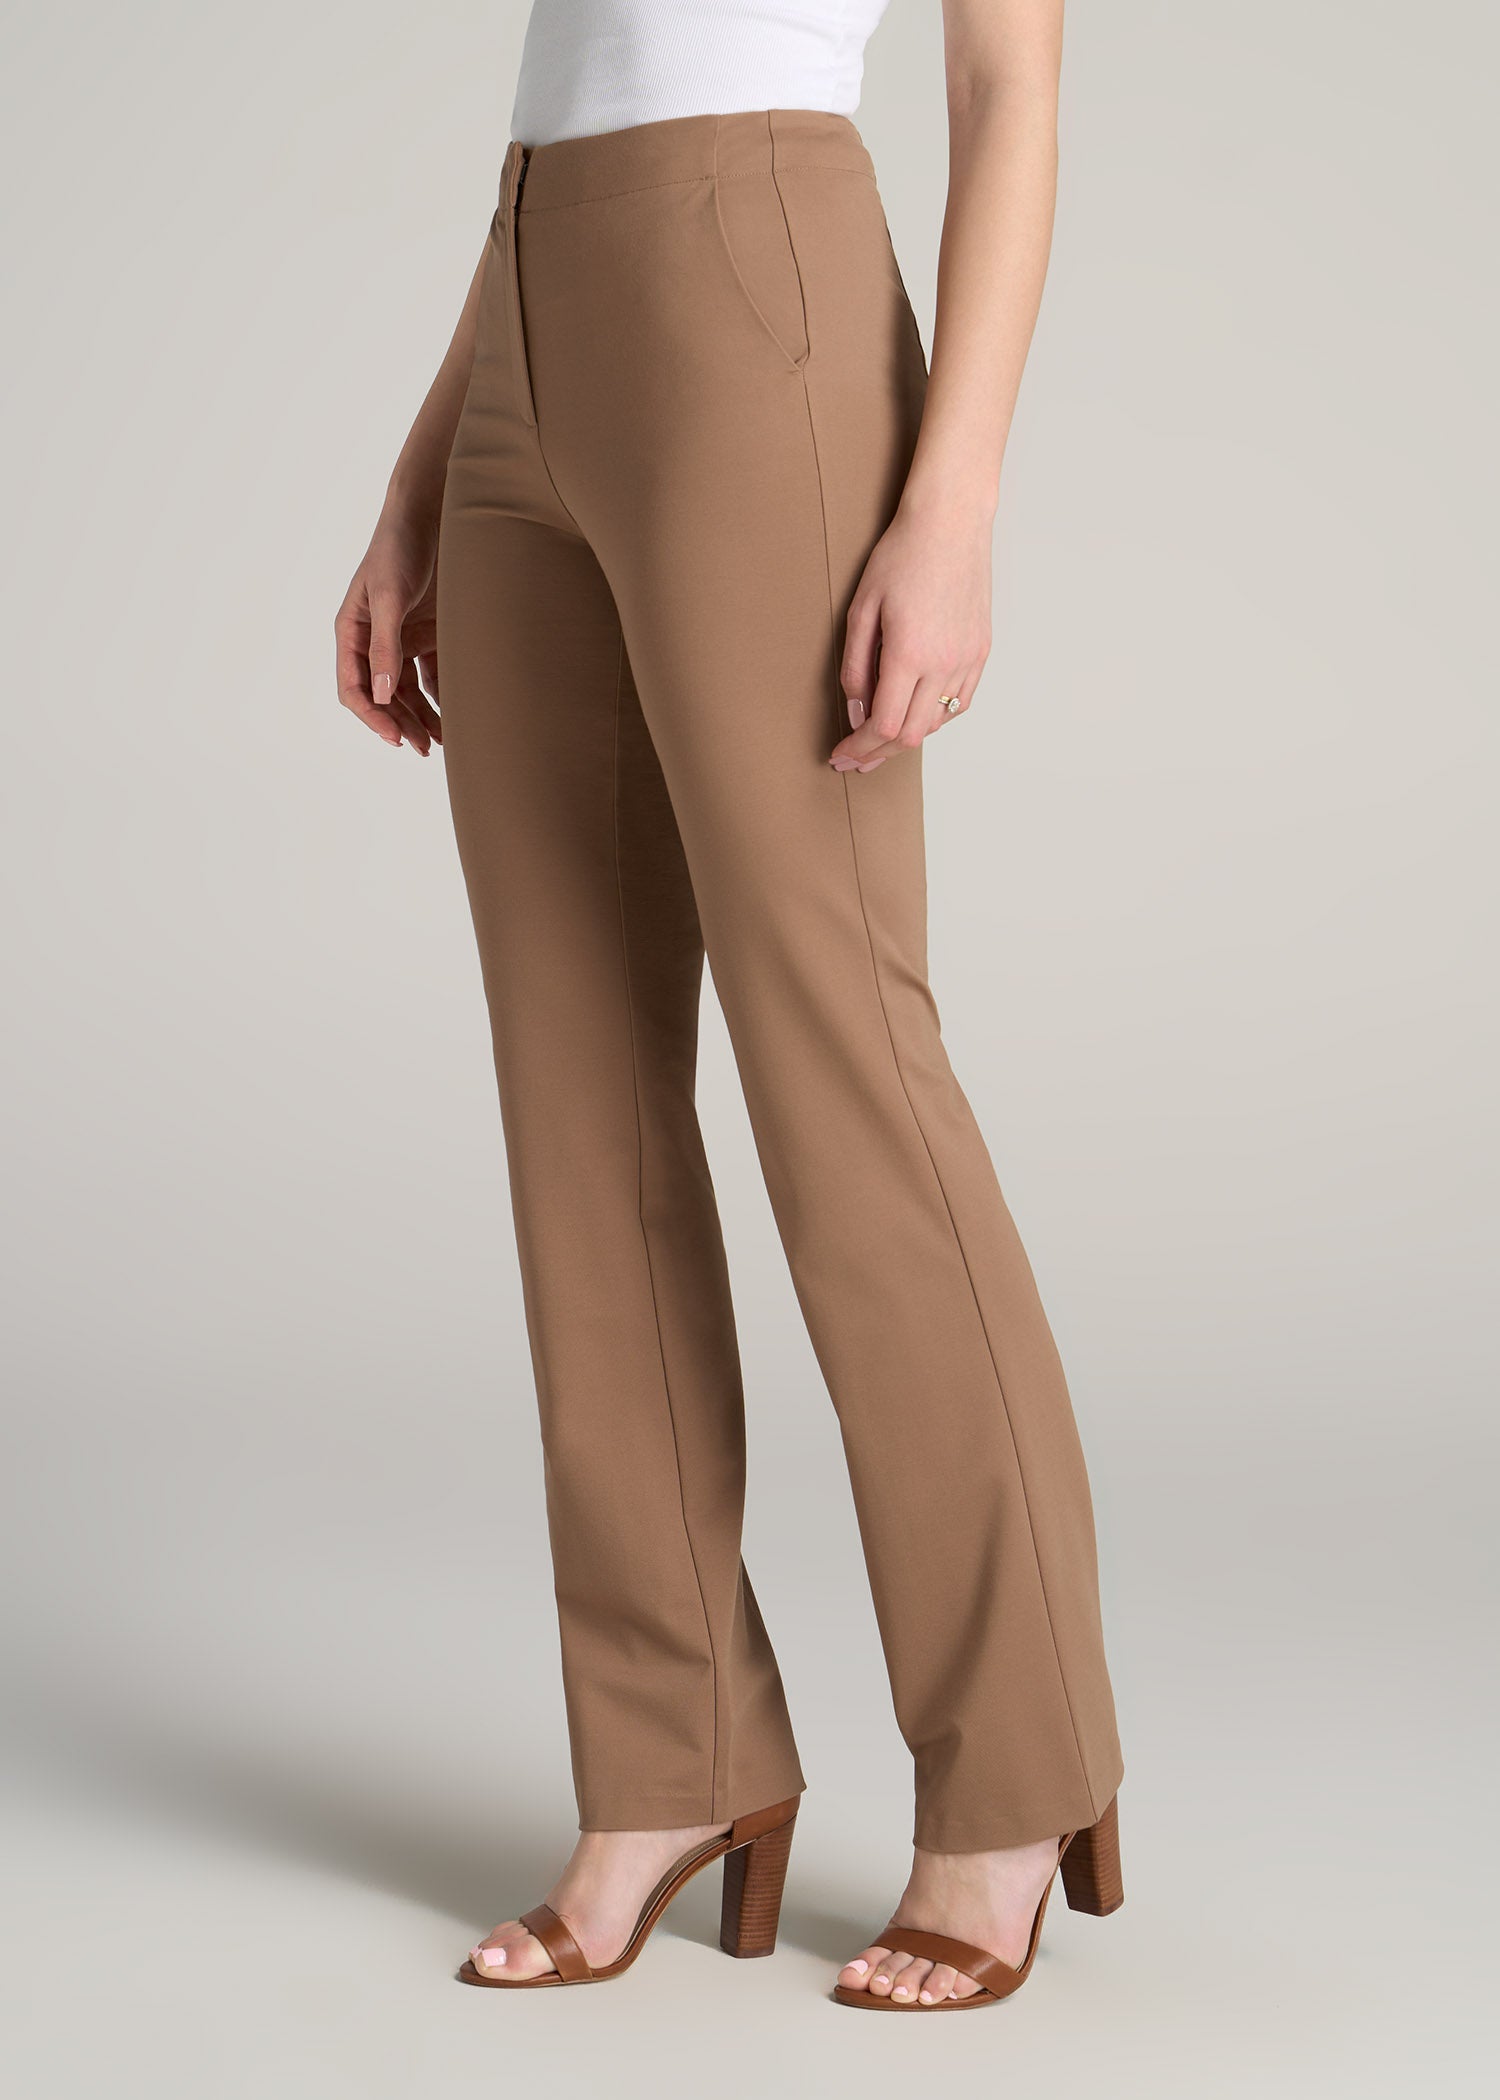 H&M Women Black Dress Pants Size 10 | eBay